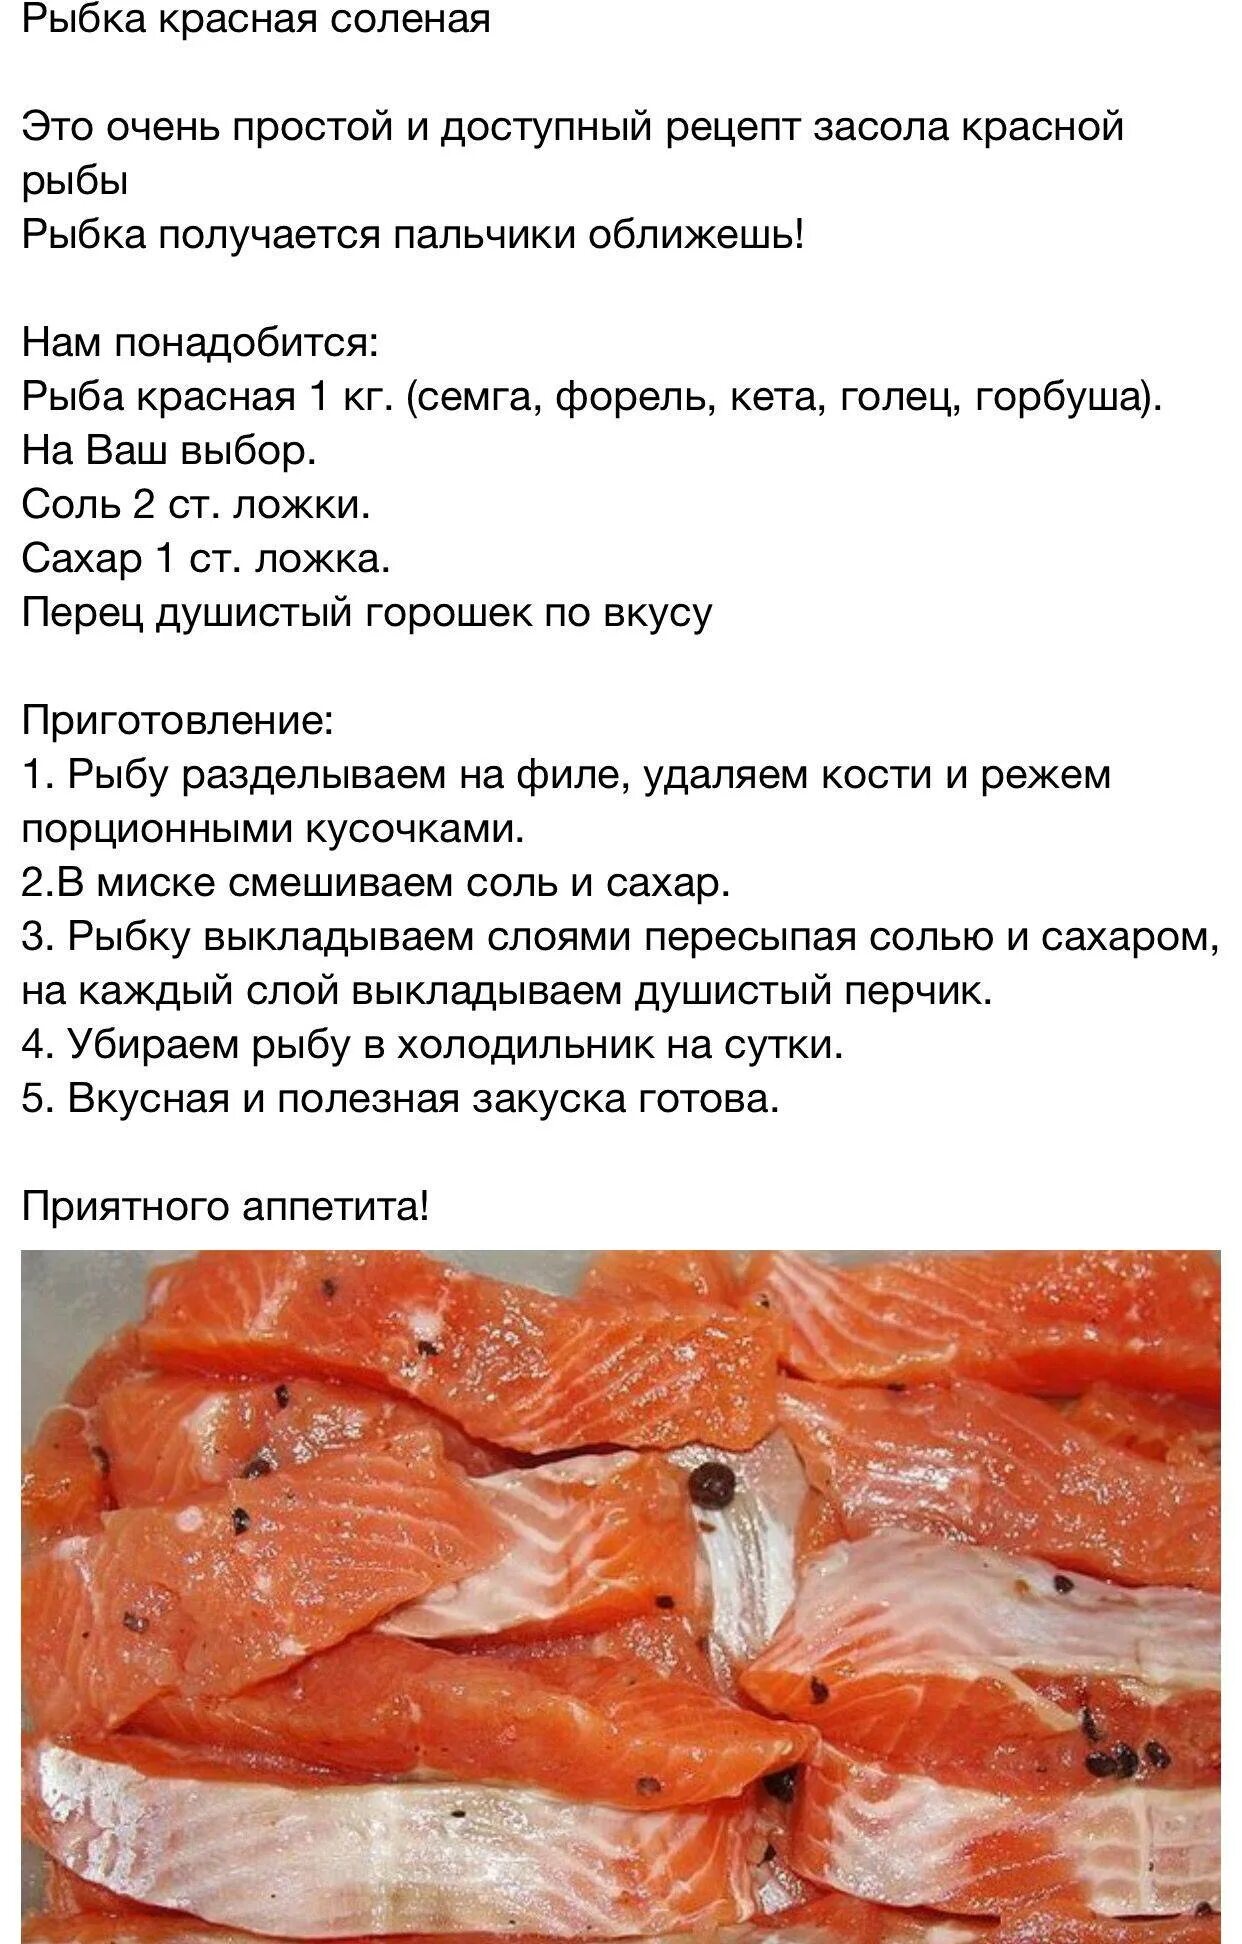 Сколько соли для красной рыбы и сахара. Соленая рыба рецепт. Рецепт соления красной рыбы. Рецепт засолки красной рыбы в домашних. Как засолить красную рыбу.